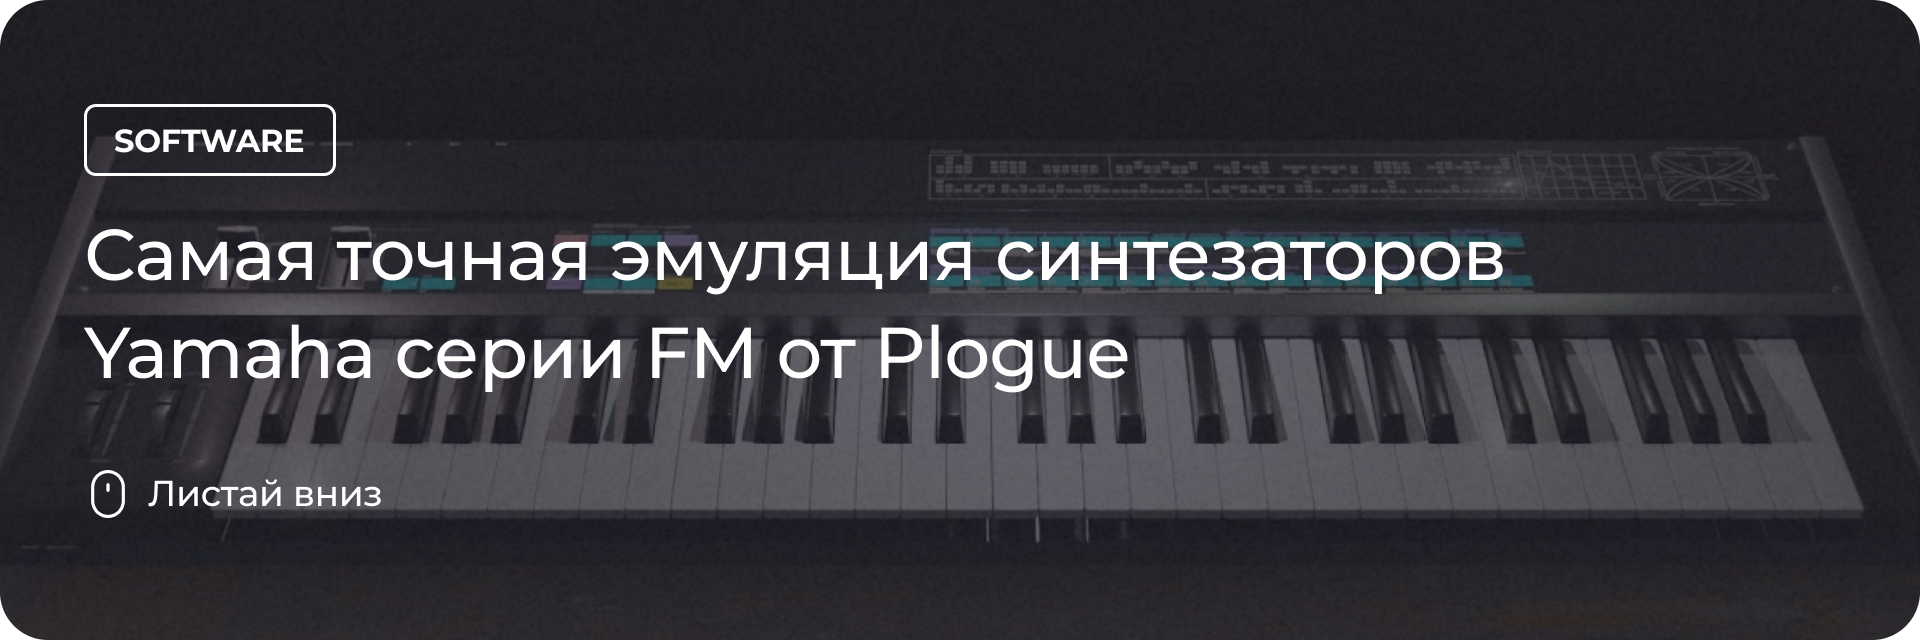 Самая точная эмуляция синтезаторов Yamaha FM от Plogue